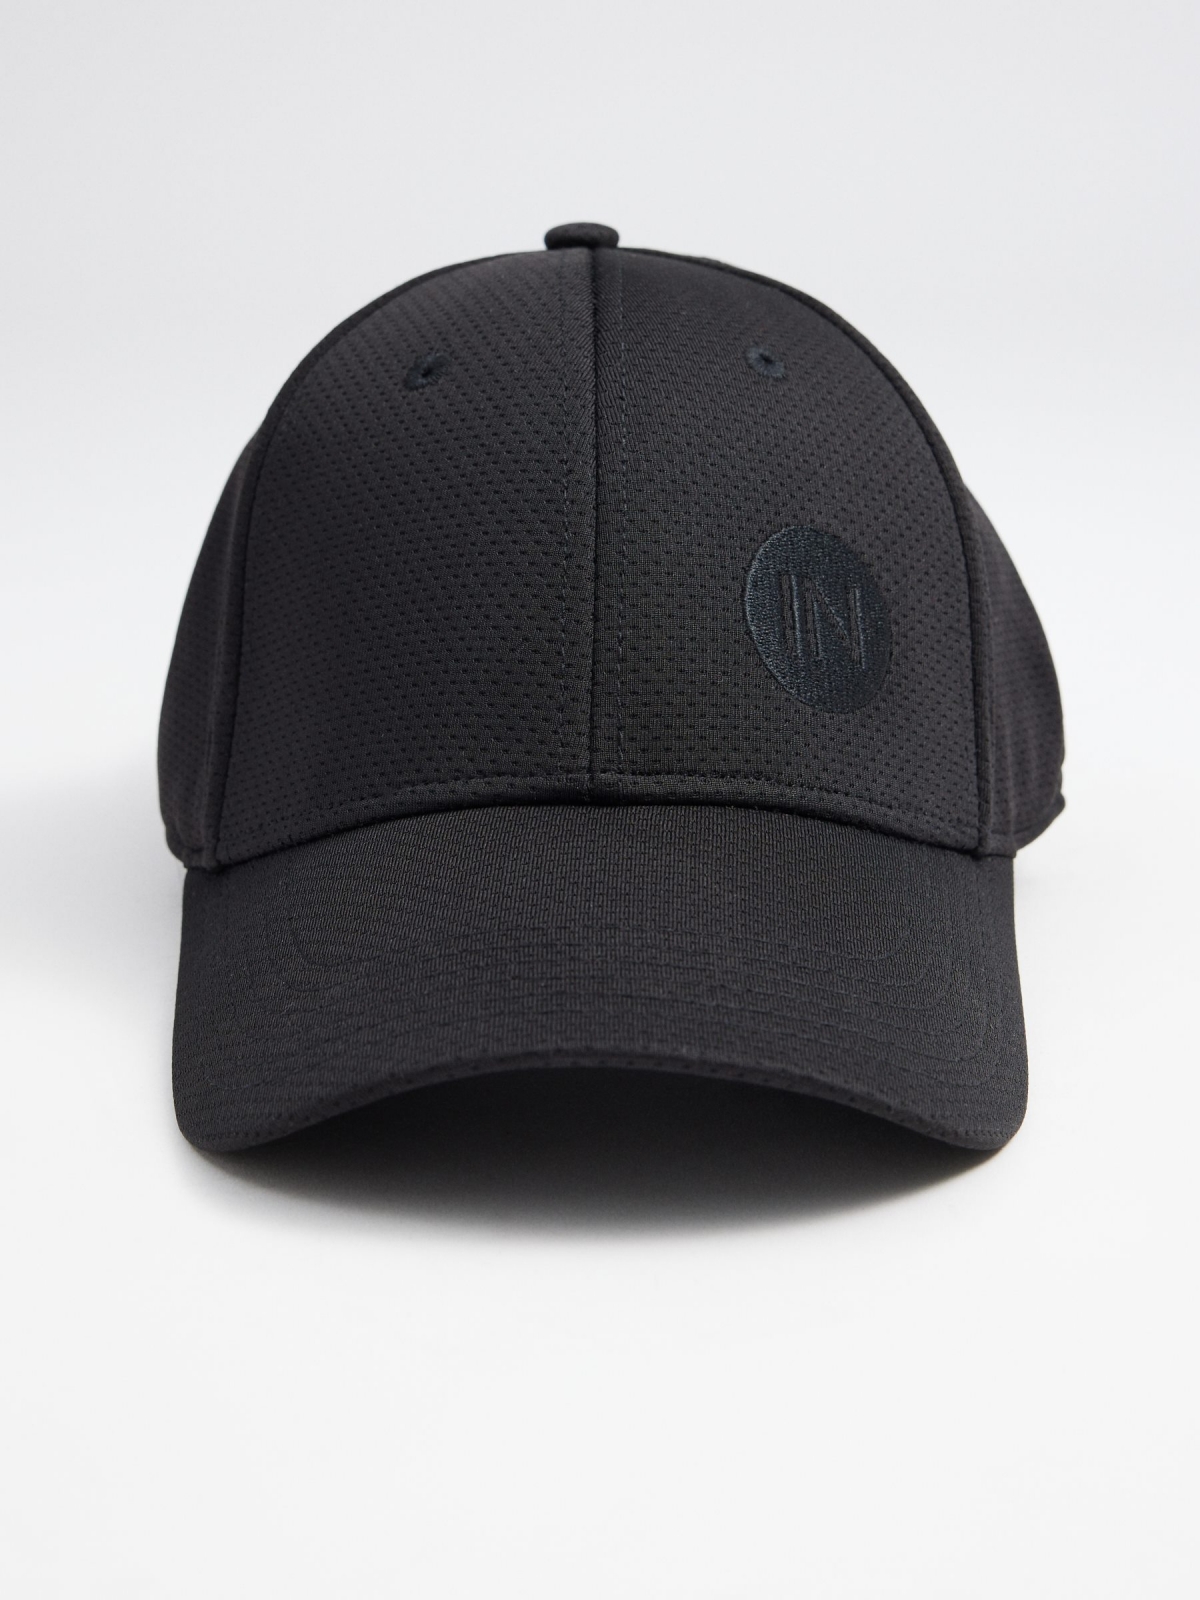 INSIDE baseball cap